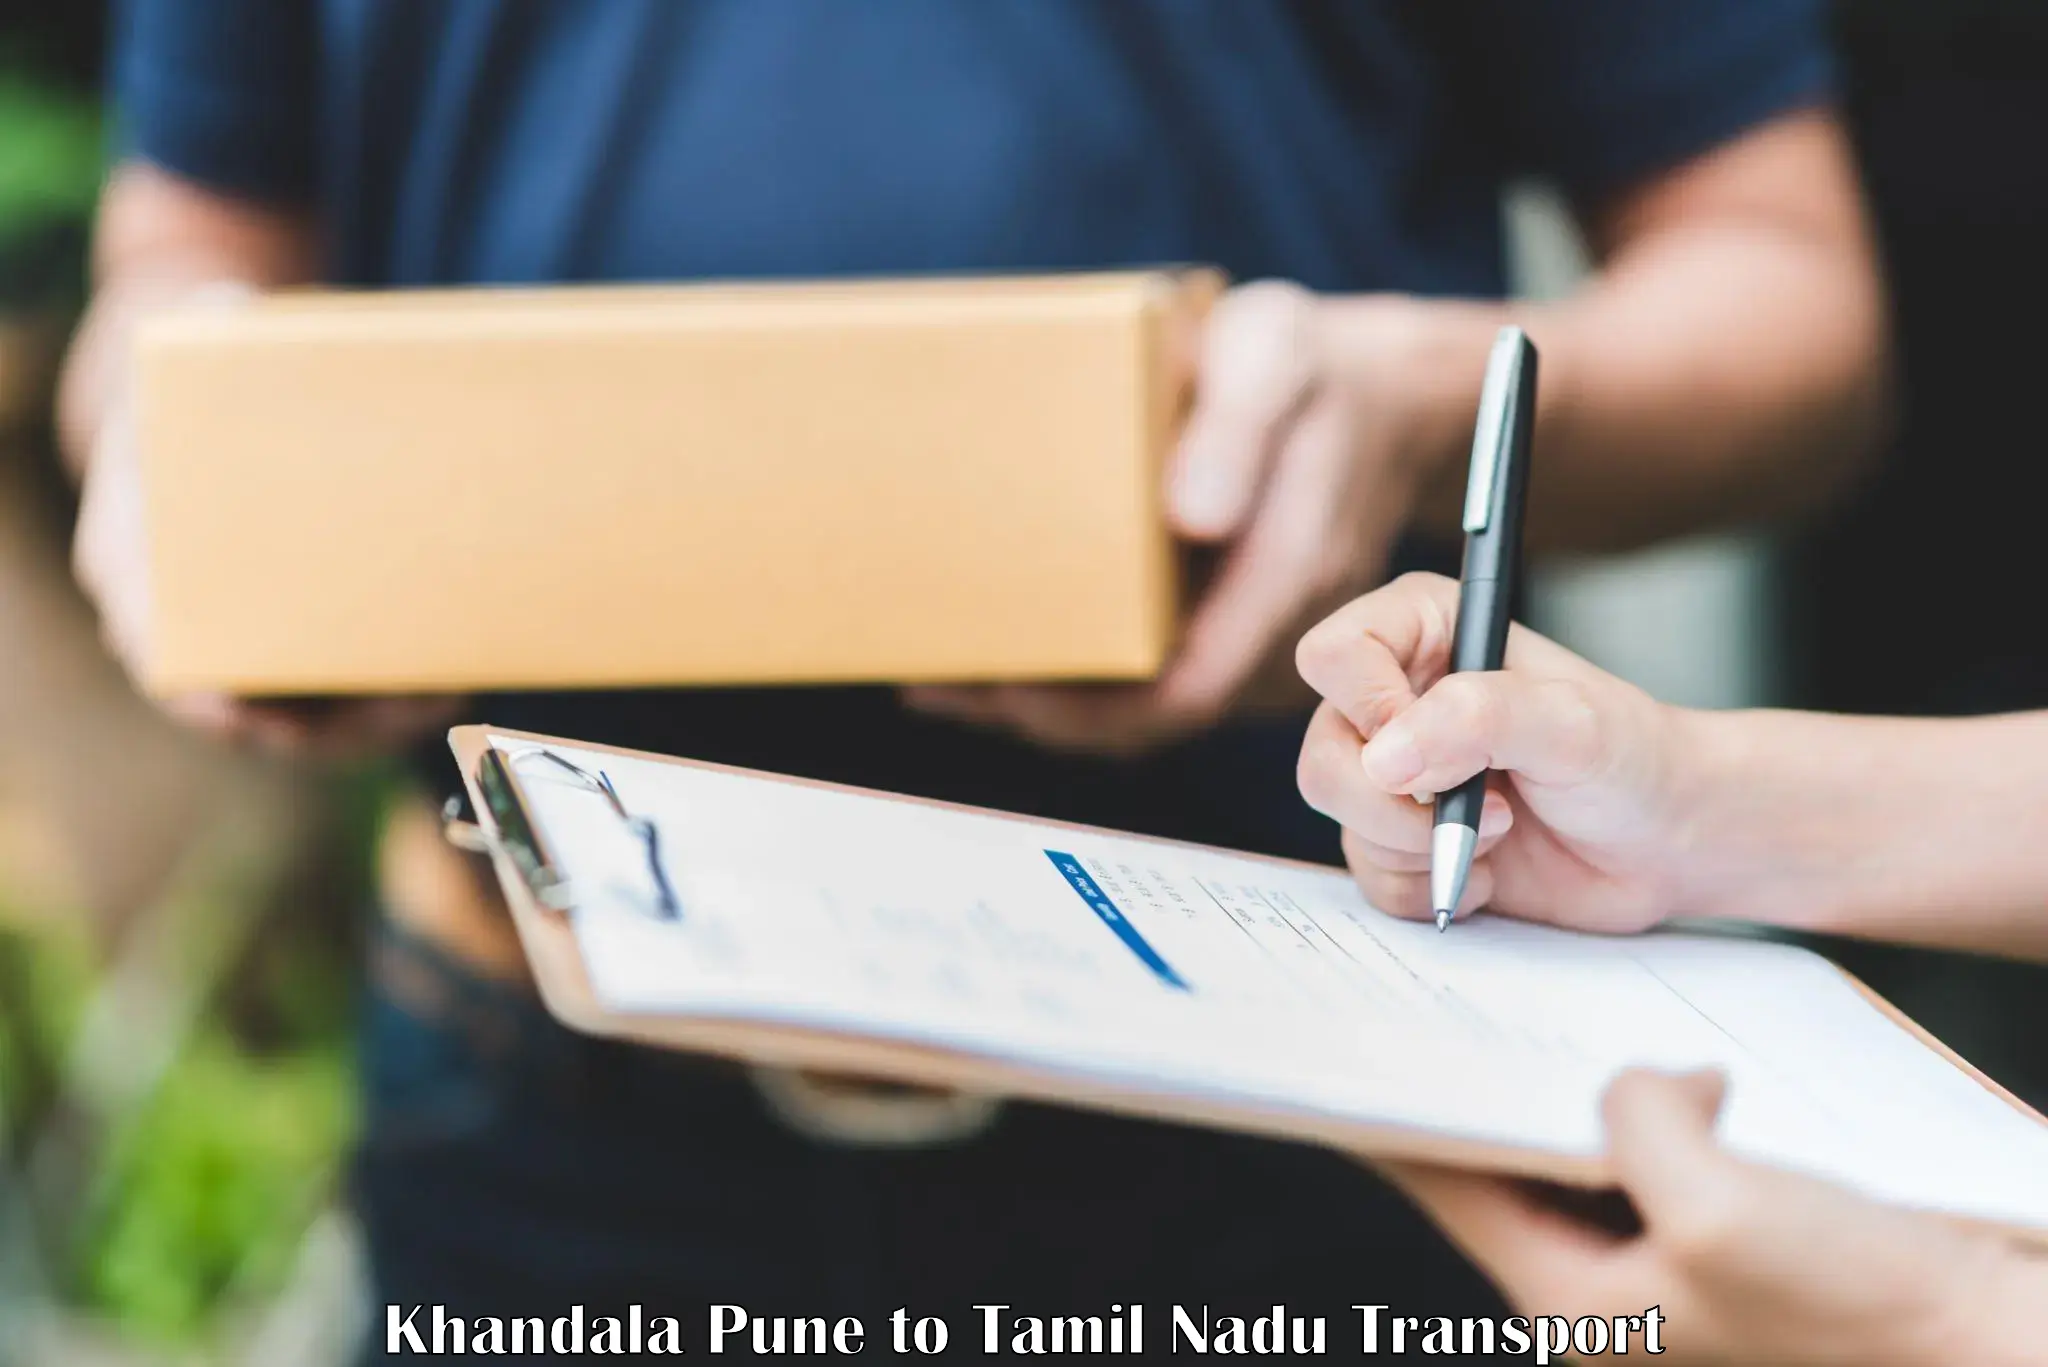 Transportation services Khandala Pune to Anthiyur